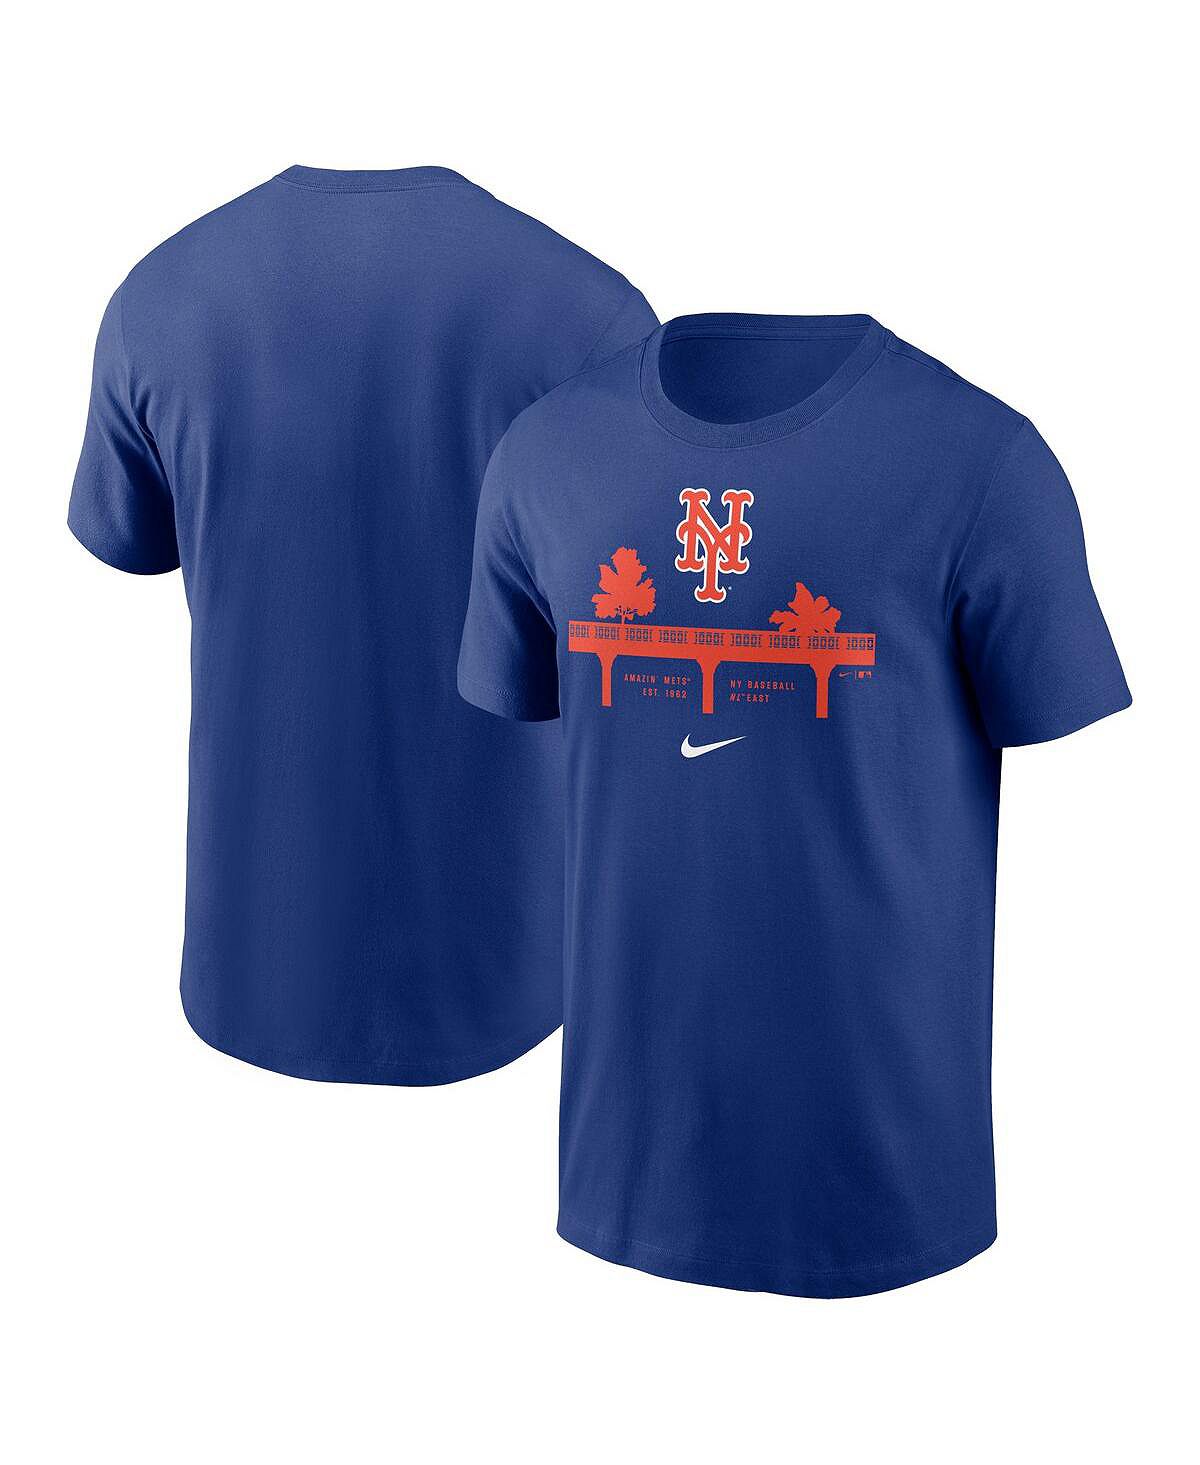 Мужская футболка Royal New York Mets Bridge Local Team Nike